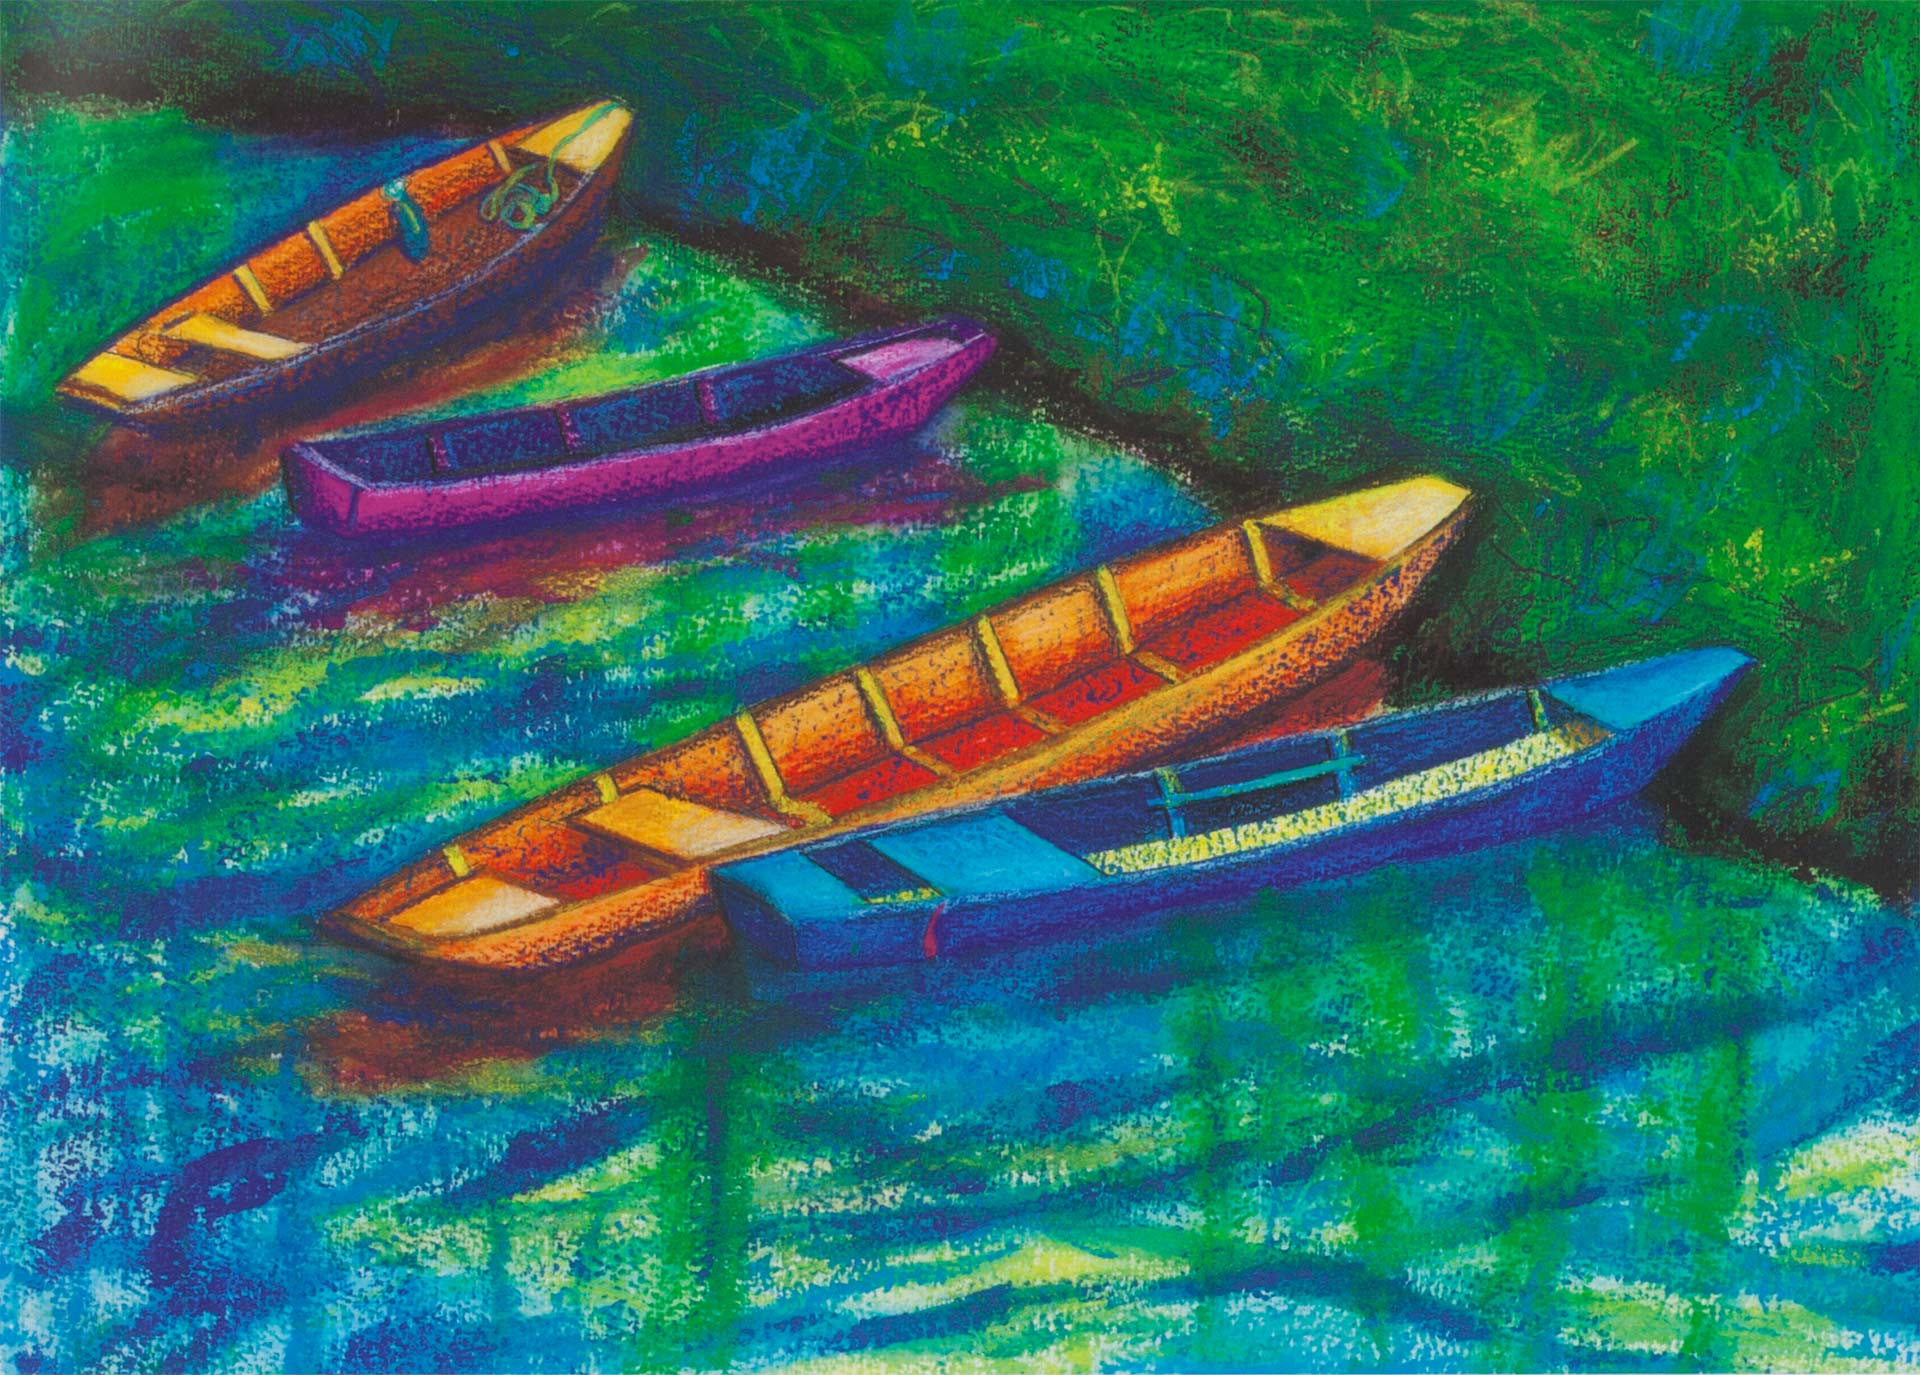 Lauren Avery Hutton | Boats on Loire 2, watercolor, 16x12, 2010